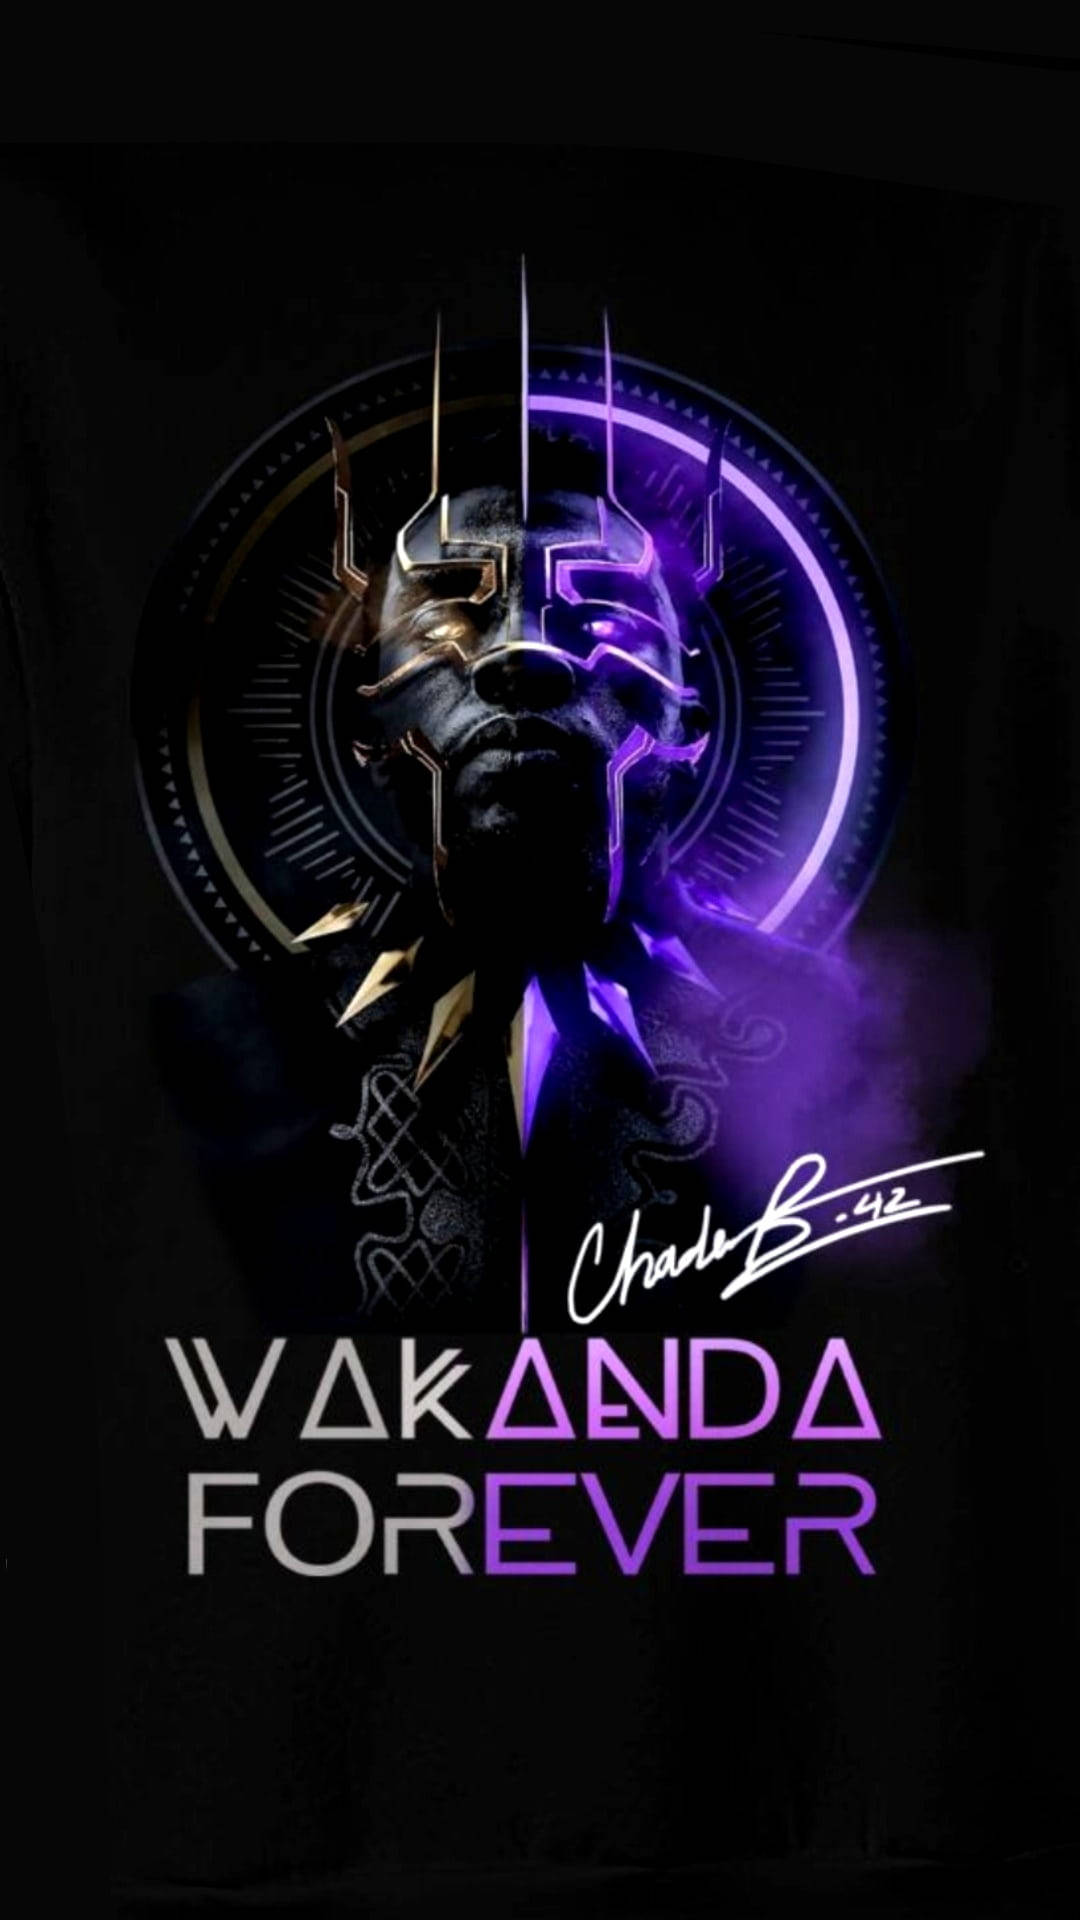 Wakanda 1080P 2K 4K 5K HD wallpapers free download  Wallpaper Flare